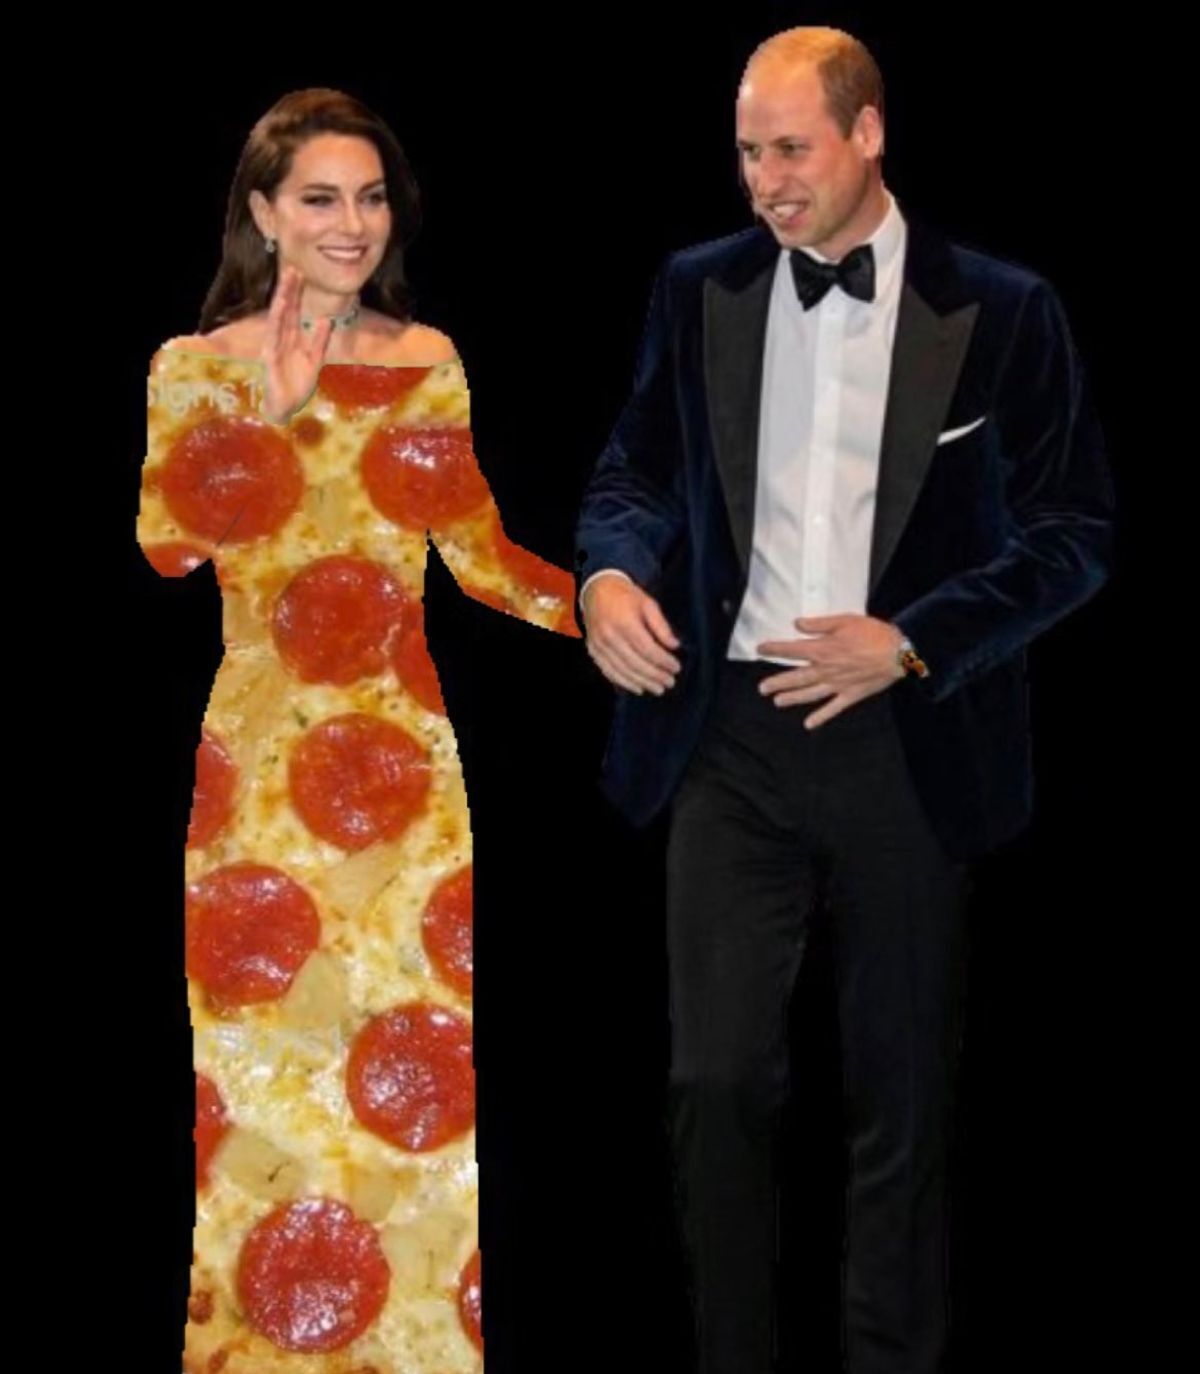 Наряд Кейт Миддлтон стал предметом для шуток в сети: почему роскошное платье породило мемы. Фото 